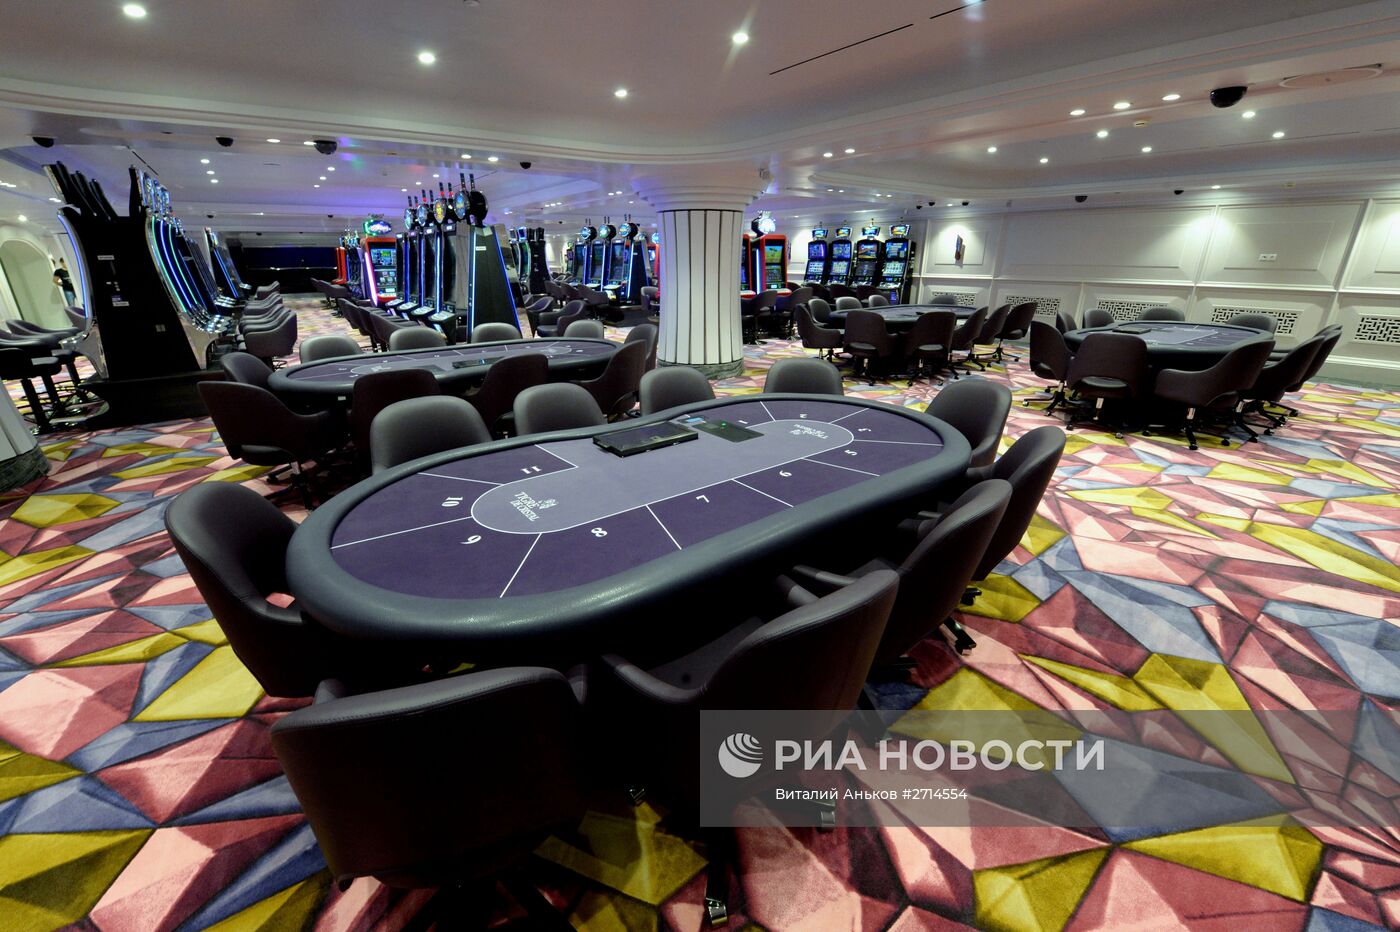 Открытие первого казино в игорной зоне "Приморье"